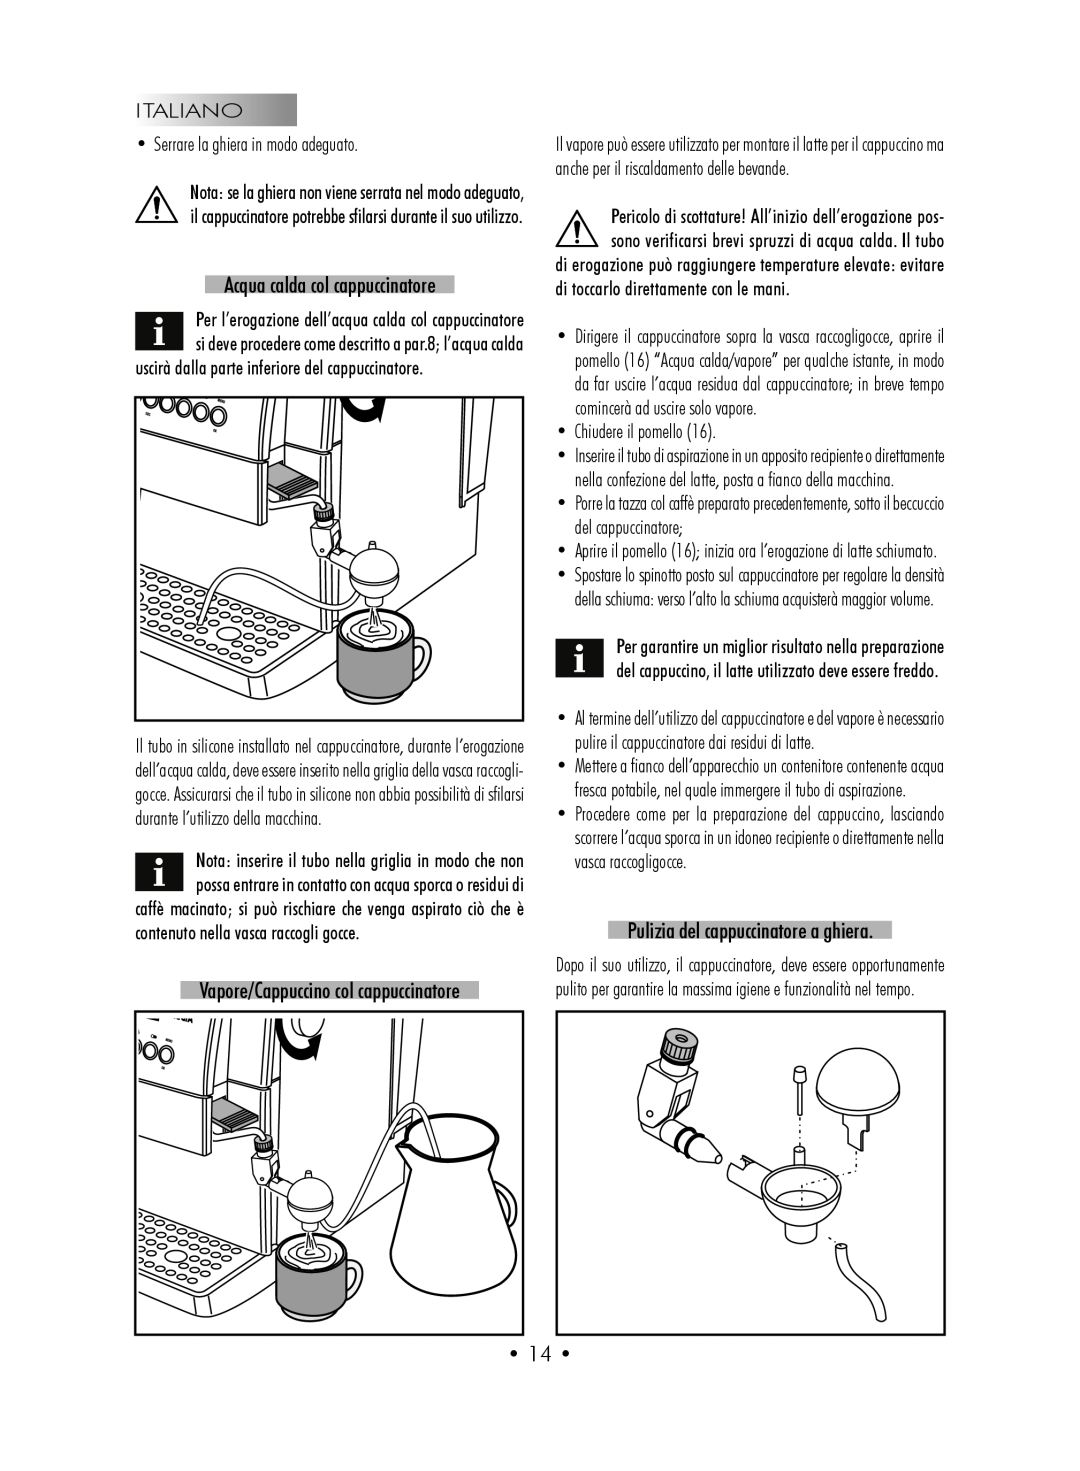 Gaggia SUP027YDR manual Acqua calda col cappuccinatore, Pulizia del cappuccinatore a ghiera, • 14 •, •Chiudere il pomello 